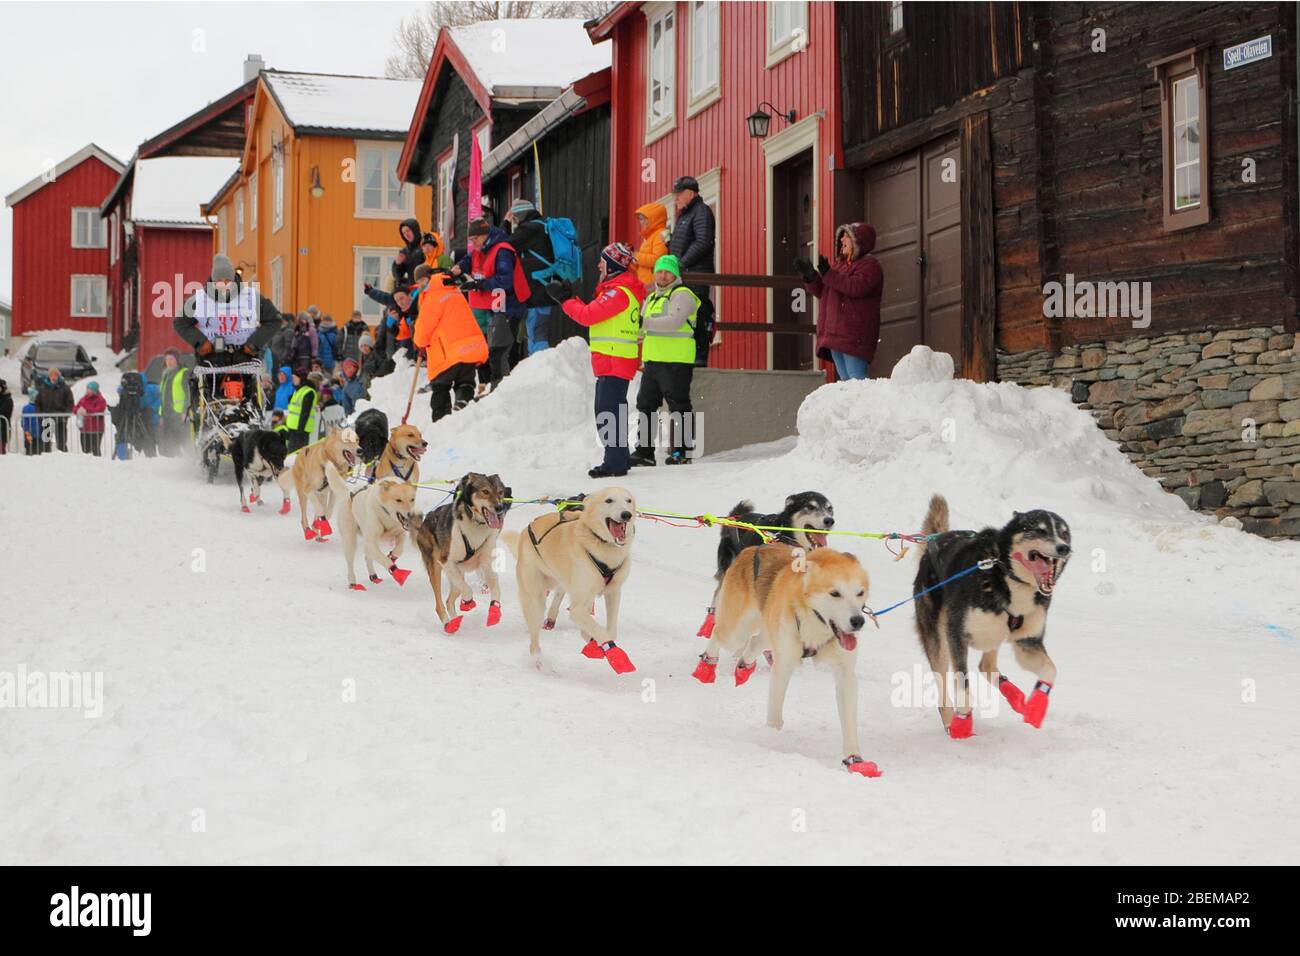 L'équipe de chiens de traîneau Husky au début de la plus grande course de chiens de traîneau au monde, 'Femundløpet/Femund Race', dans la ville historique de Røros, Norvège Banque D'Images